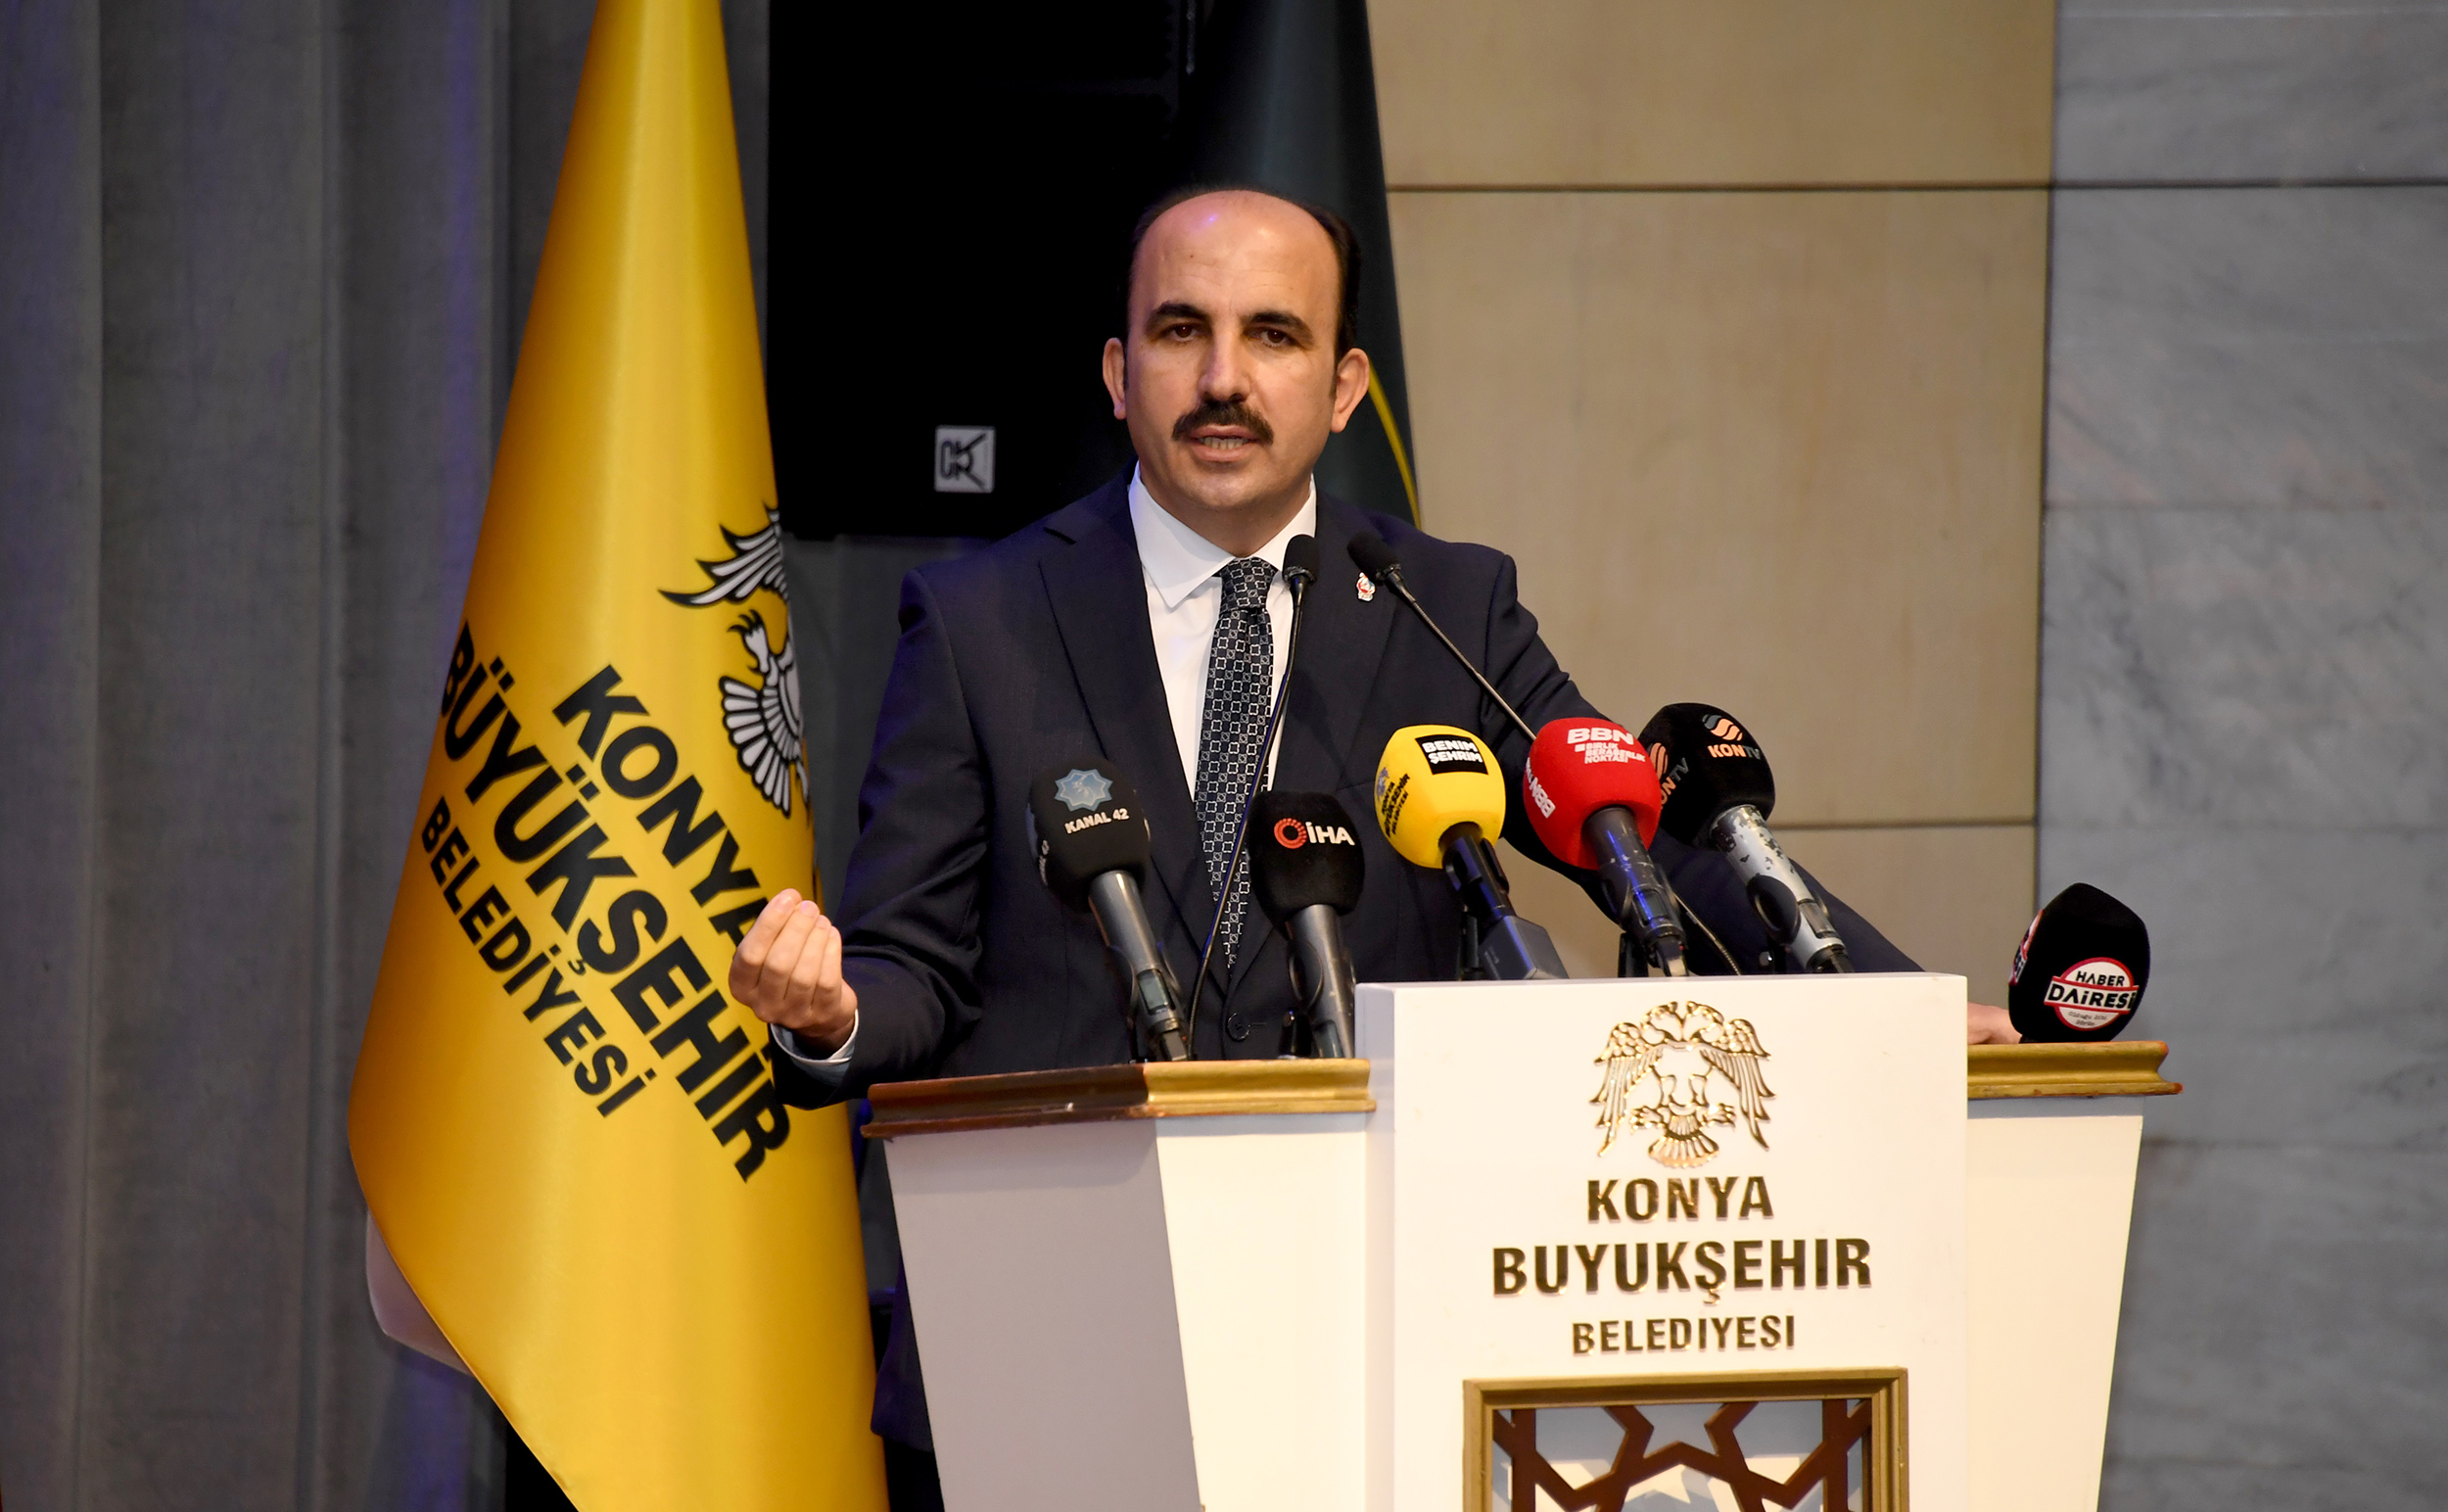 Konya Büyükşehir Belediye Başkanı Uğur İbrahim Altay, Konya gündemini meşgul eden “6 milyon” konusuyla ilgili kamuoyuna açıklamalarda bulundu.